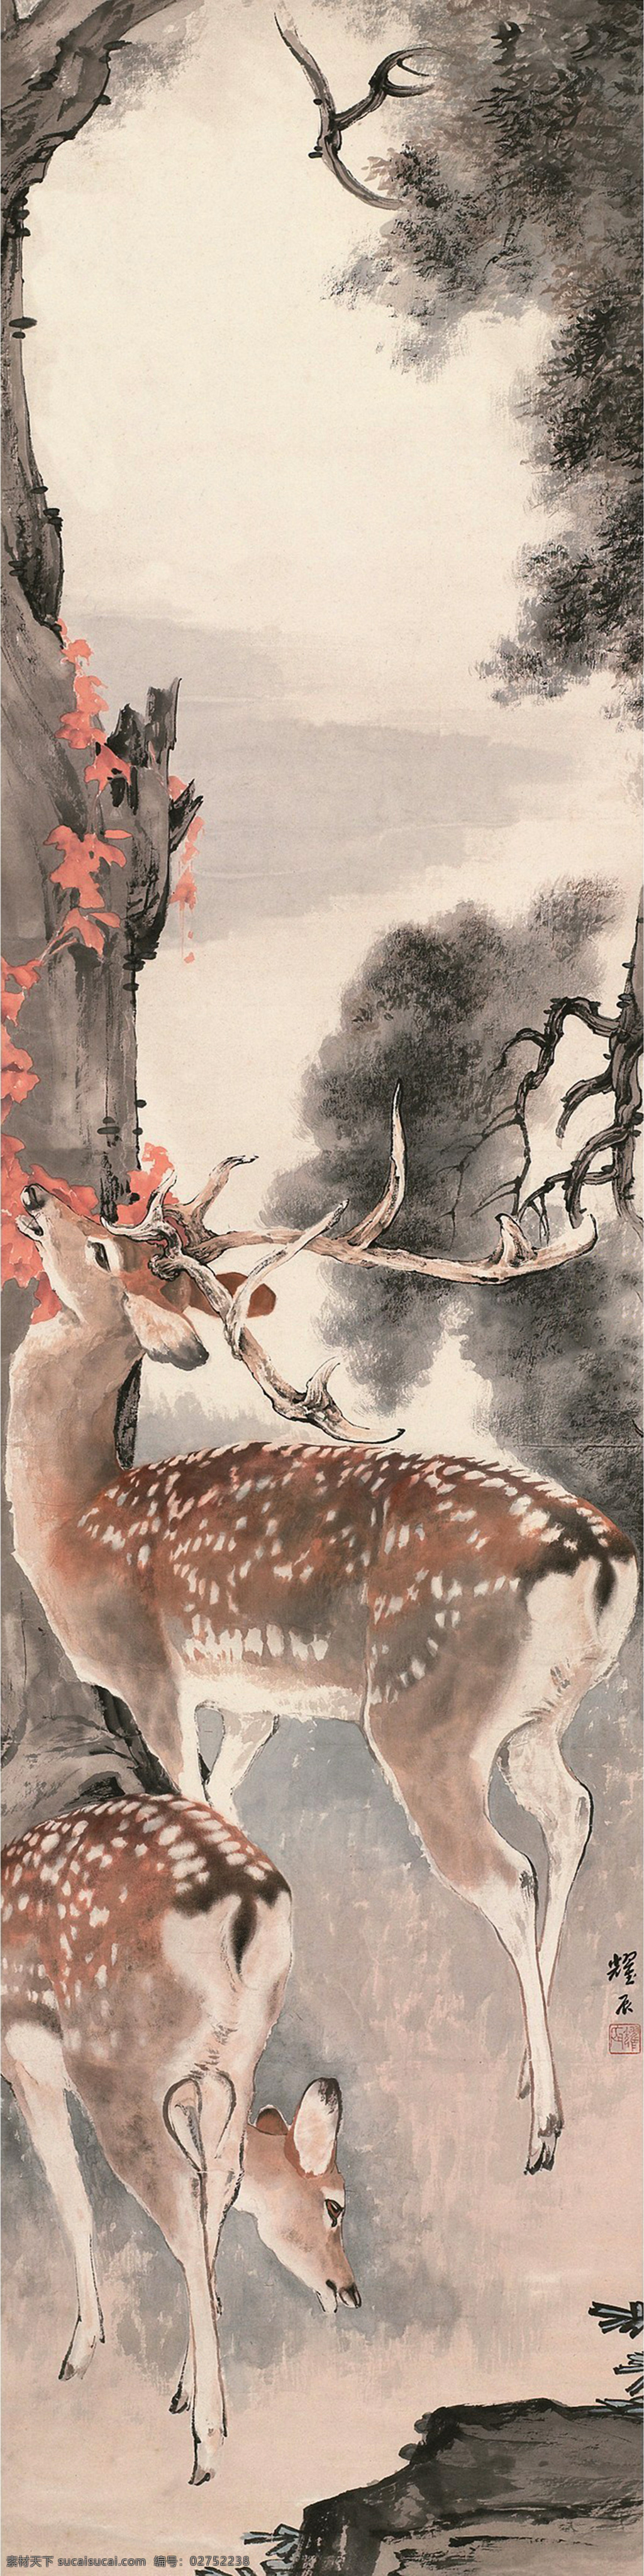 双鹿 国画 刘奎龄 鹿 梅花鹿 动物 绘画书法 文化艺术 国画刘奎龄